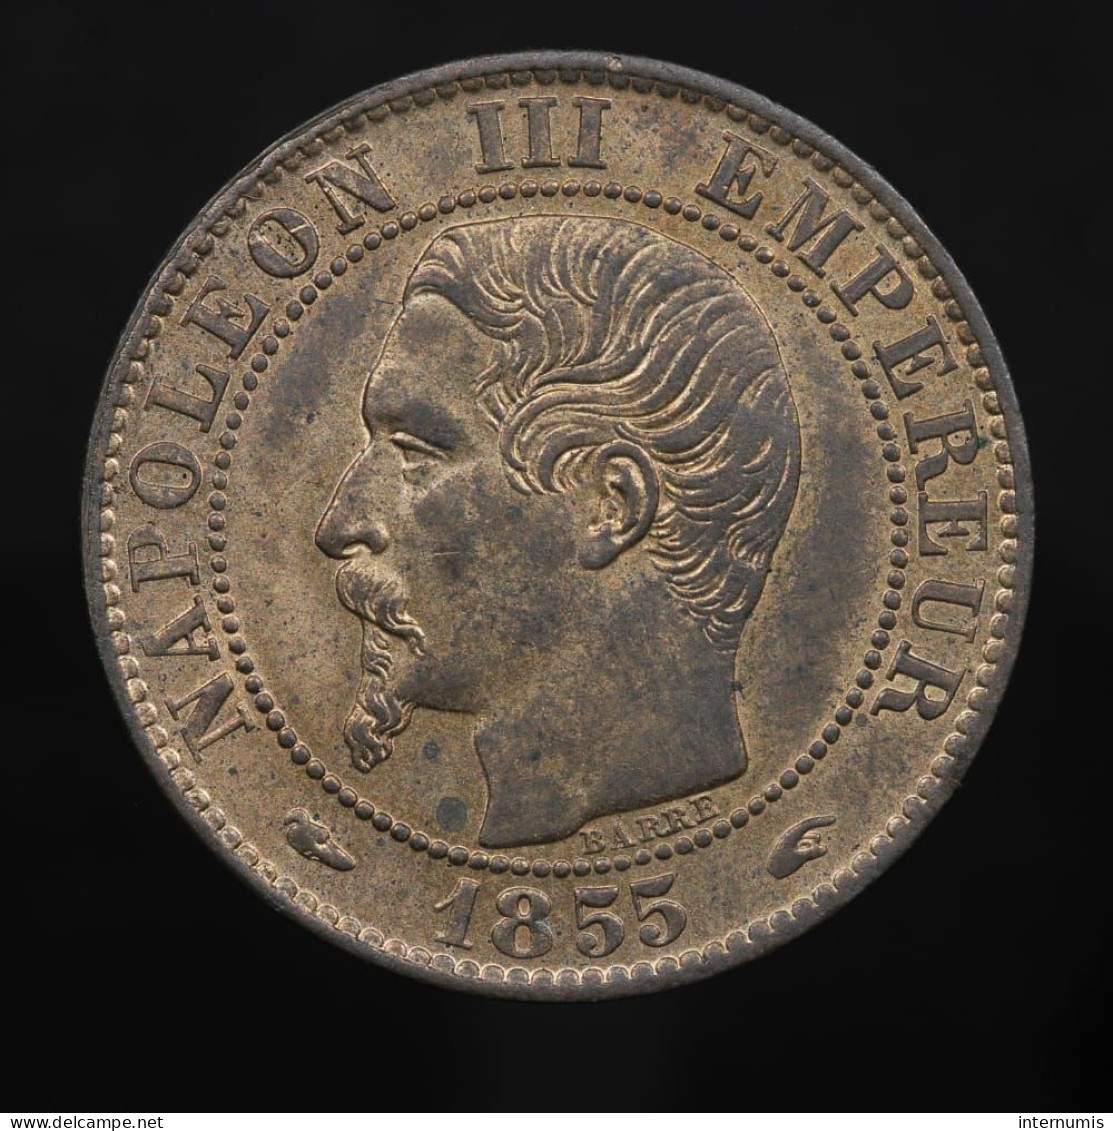 France, Napoléon III, 5 Centimes (Chien), 1855, A - Paris, Bronze, SUP (AU), KM#777.1, Gad.152, F.116/16 - 1 Centime